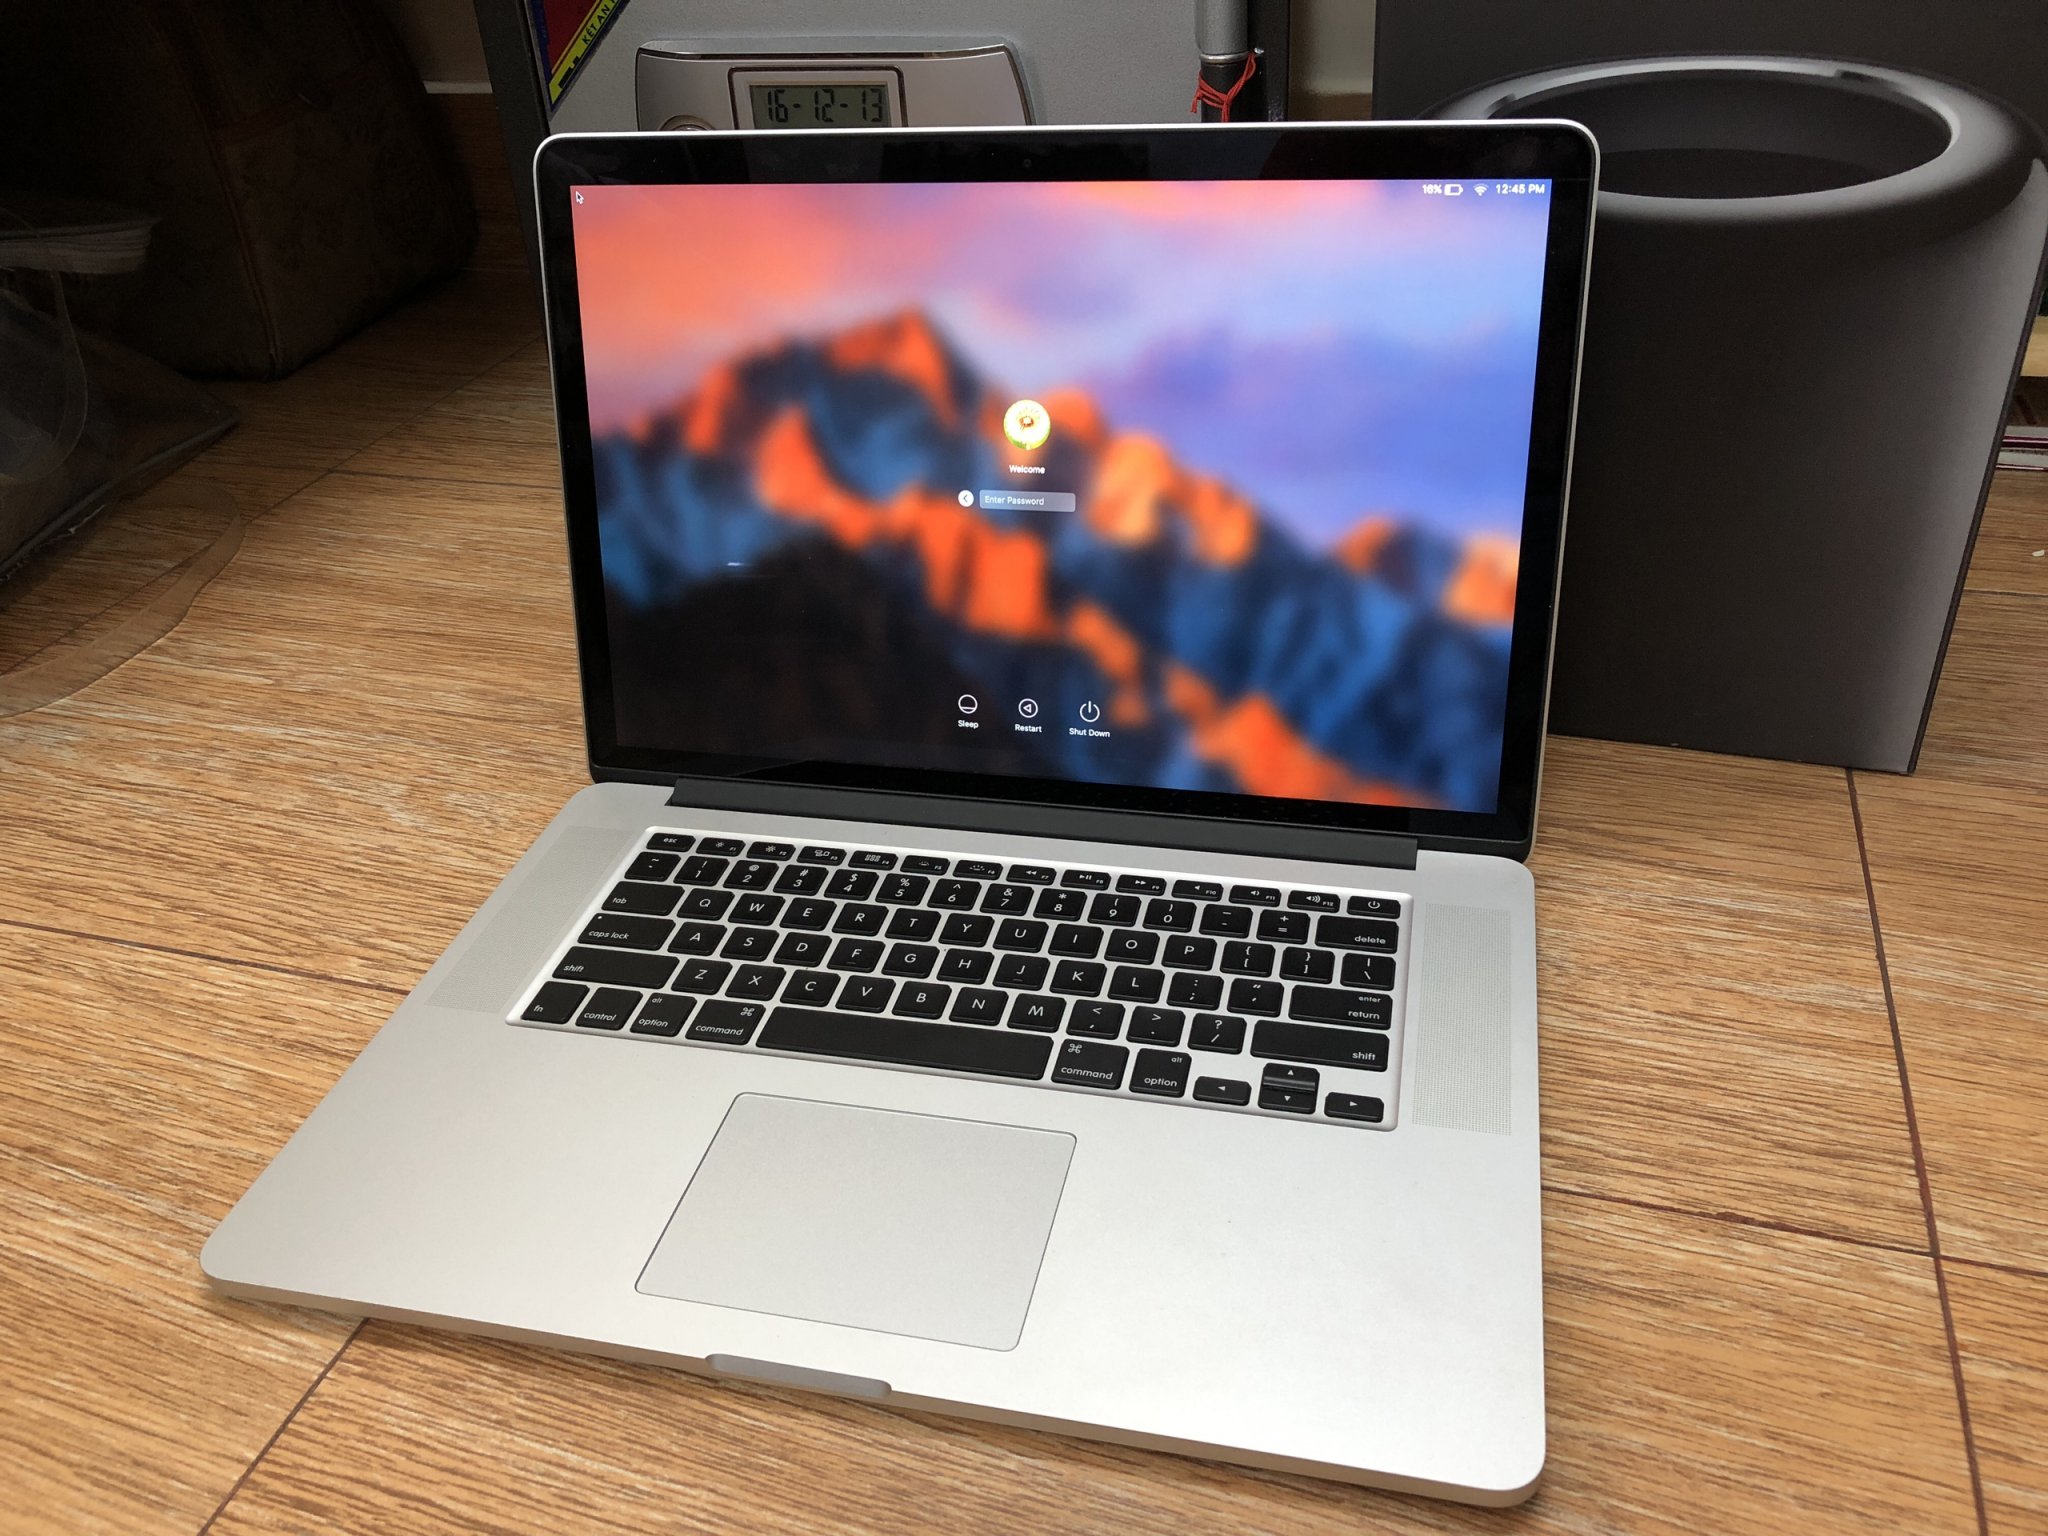 Macbook Pro 15 inch là dòng máy rất đáng sở hữu nằm trong số các máy Workstation cấu hình cao